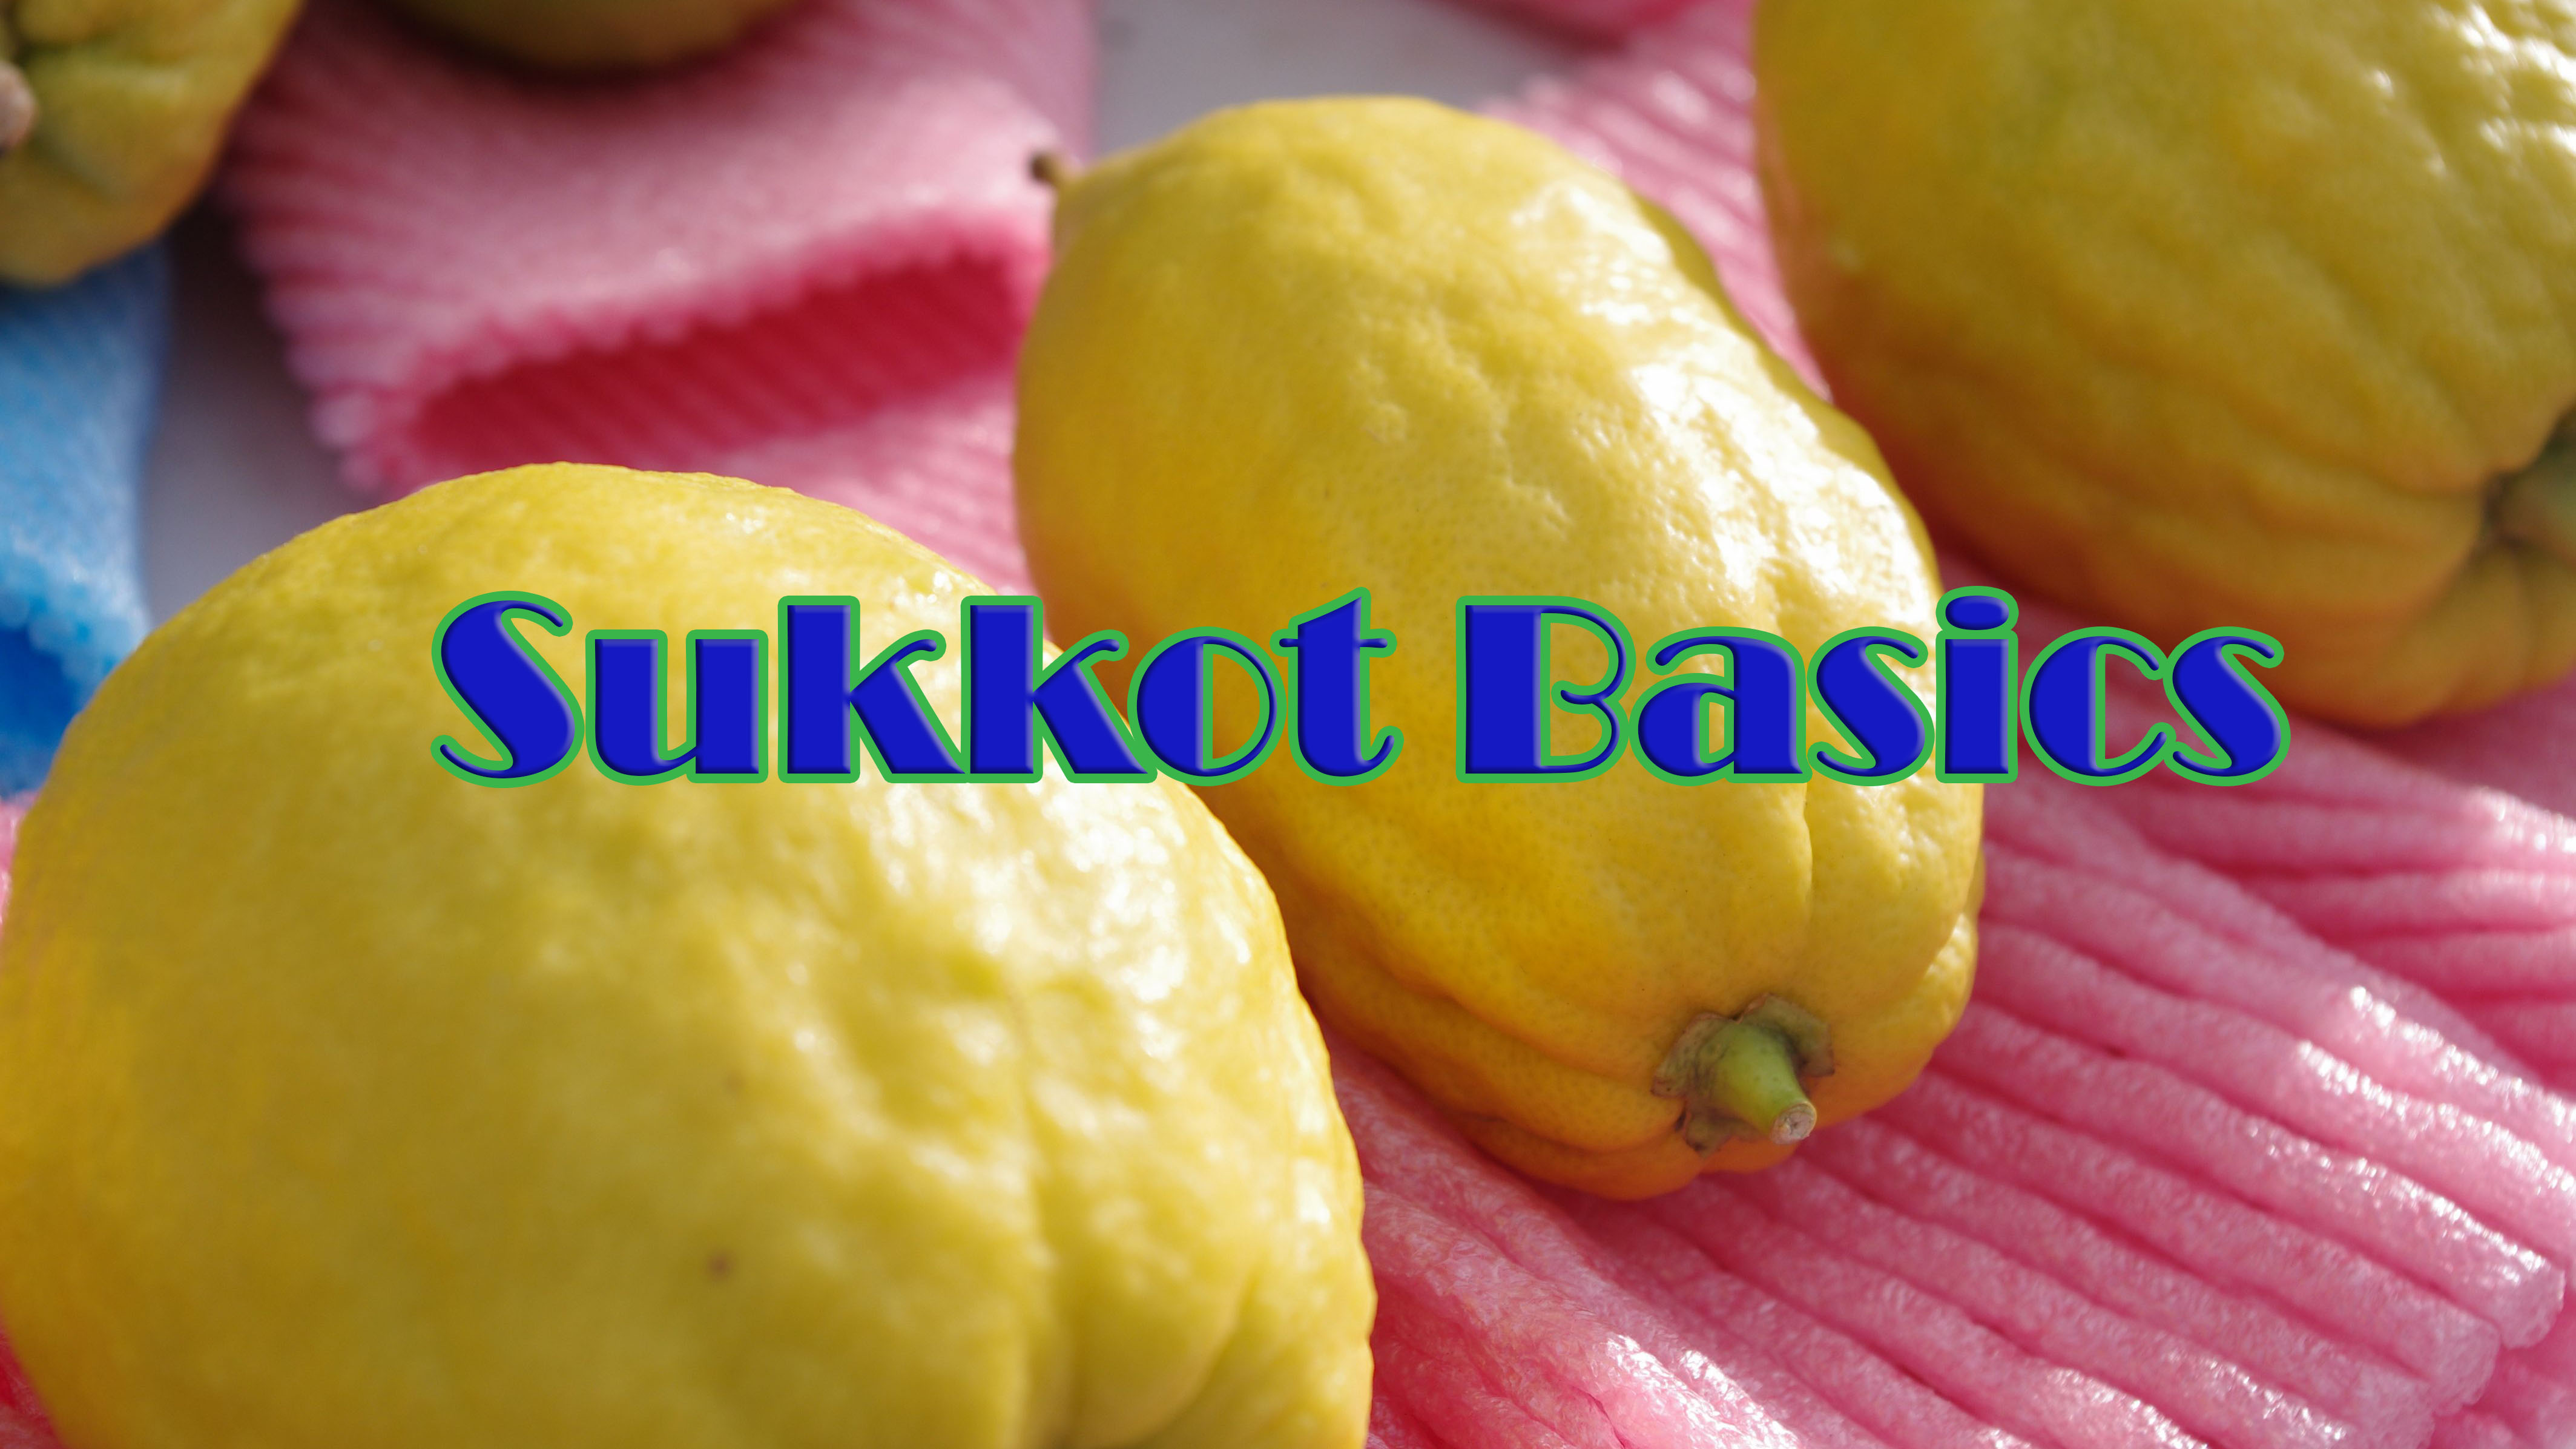 Sukkot Basics for Total Beginners